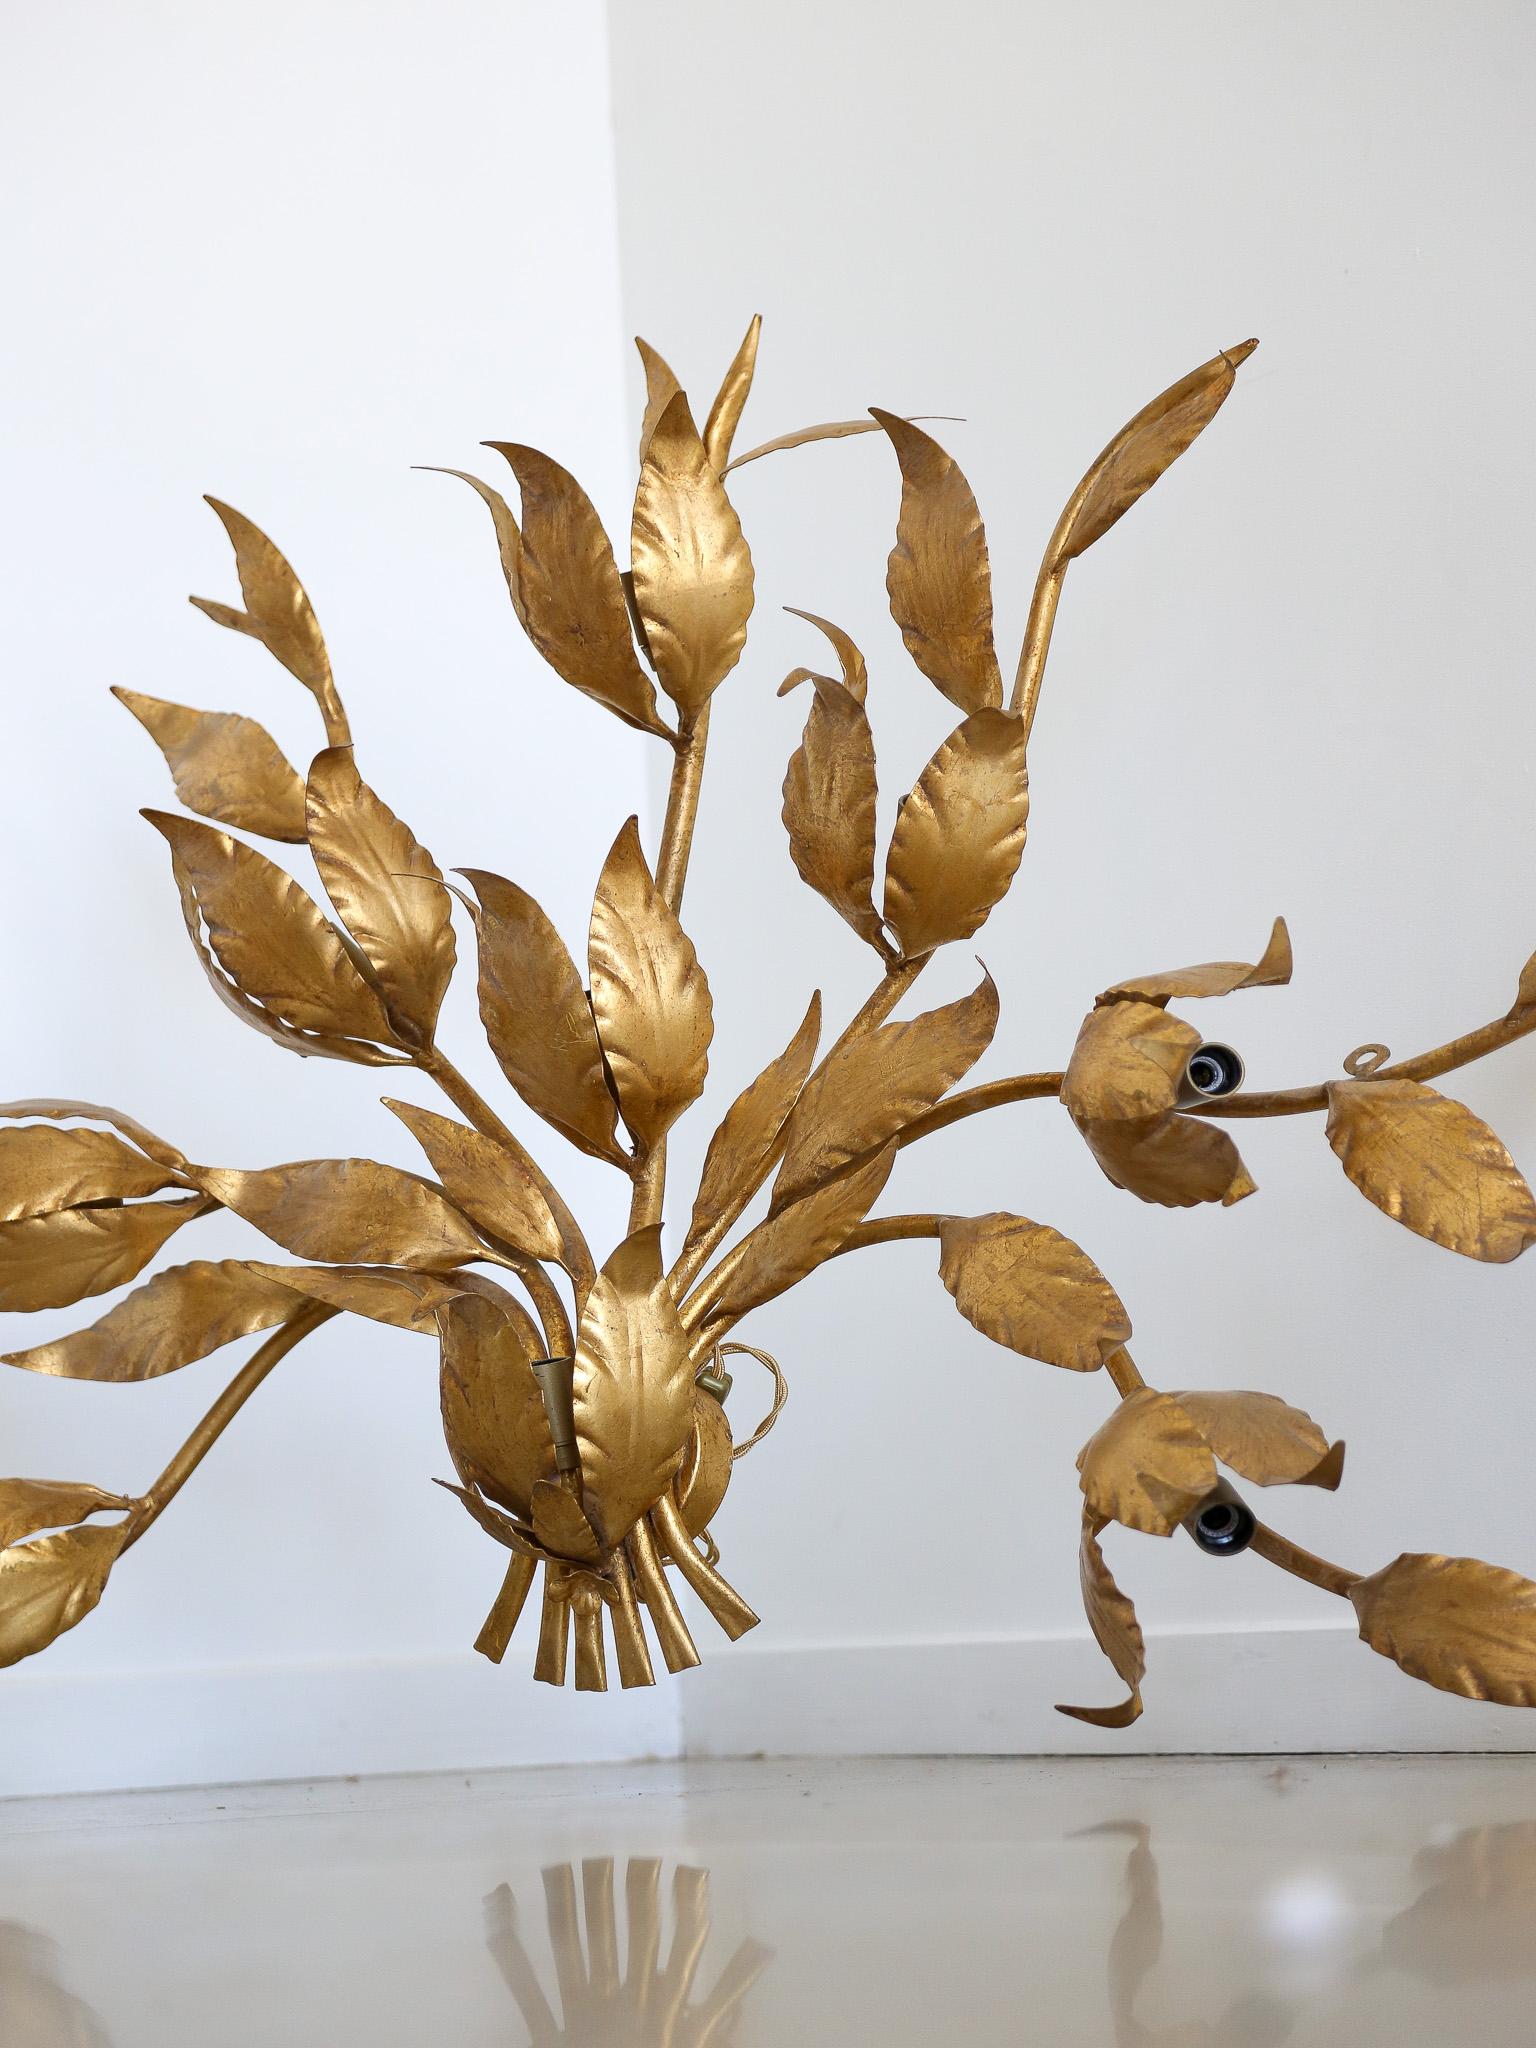 Les grandes appliques Art-Leco en laiton et ornées de feuilles d'or étaient un choix de design courant à l'époque de l'Art-Deco. Ces appliques se caractérisaient par leurs designs élégants et géométriques, incorporant souvent des matériaux luxueux